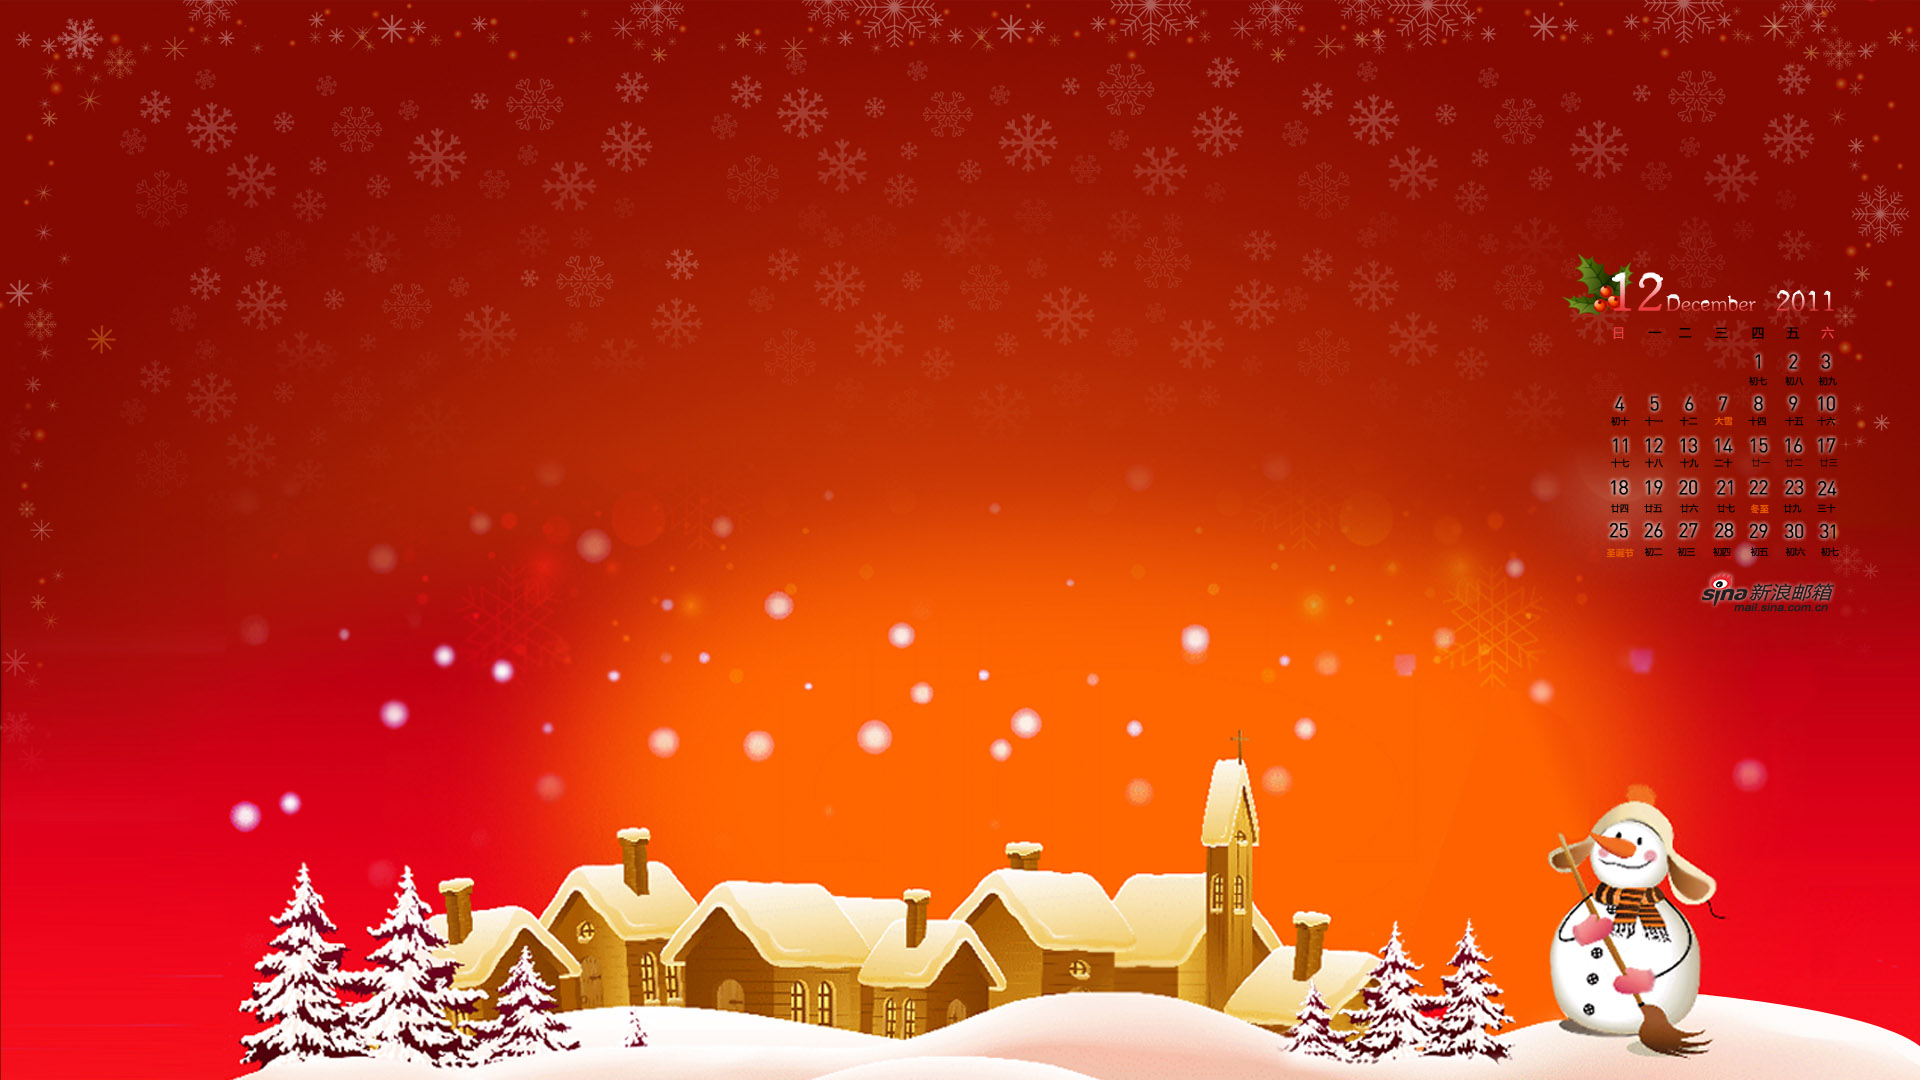 Sina Mailbox Merry Christmas December 2011 Calendar Wallpaper